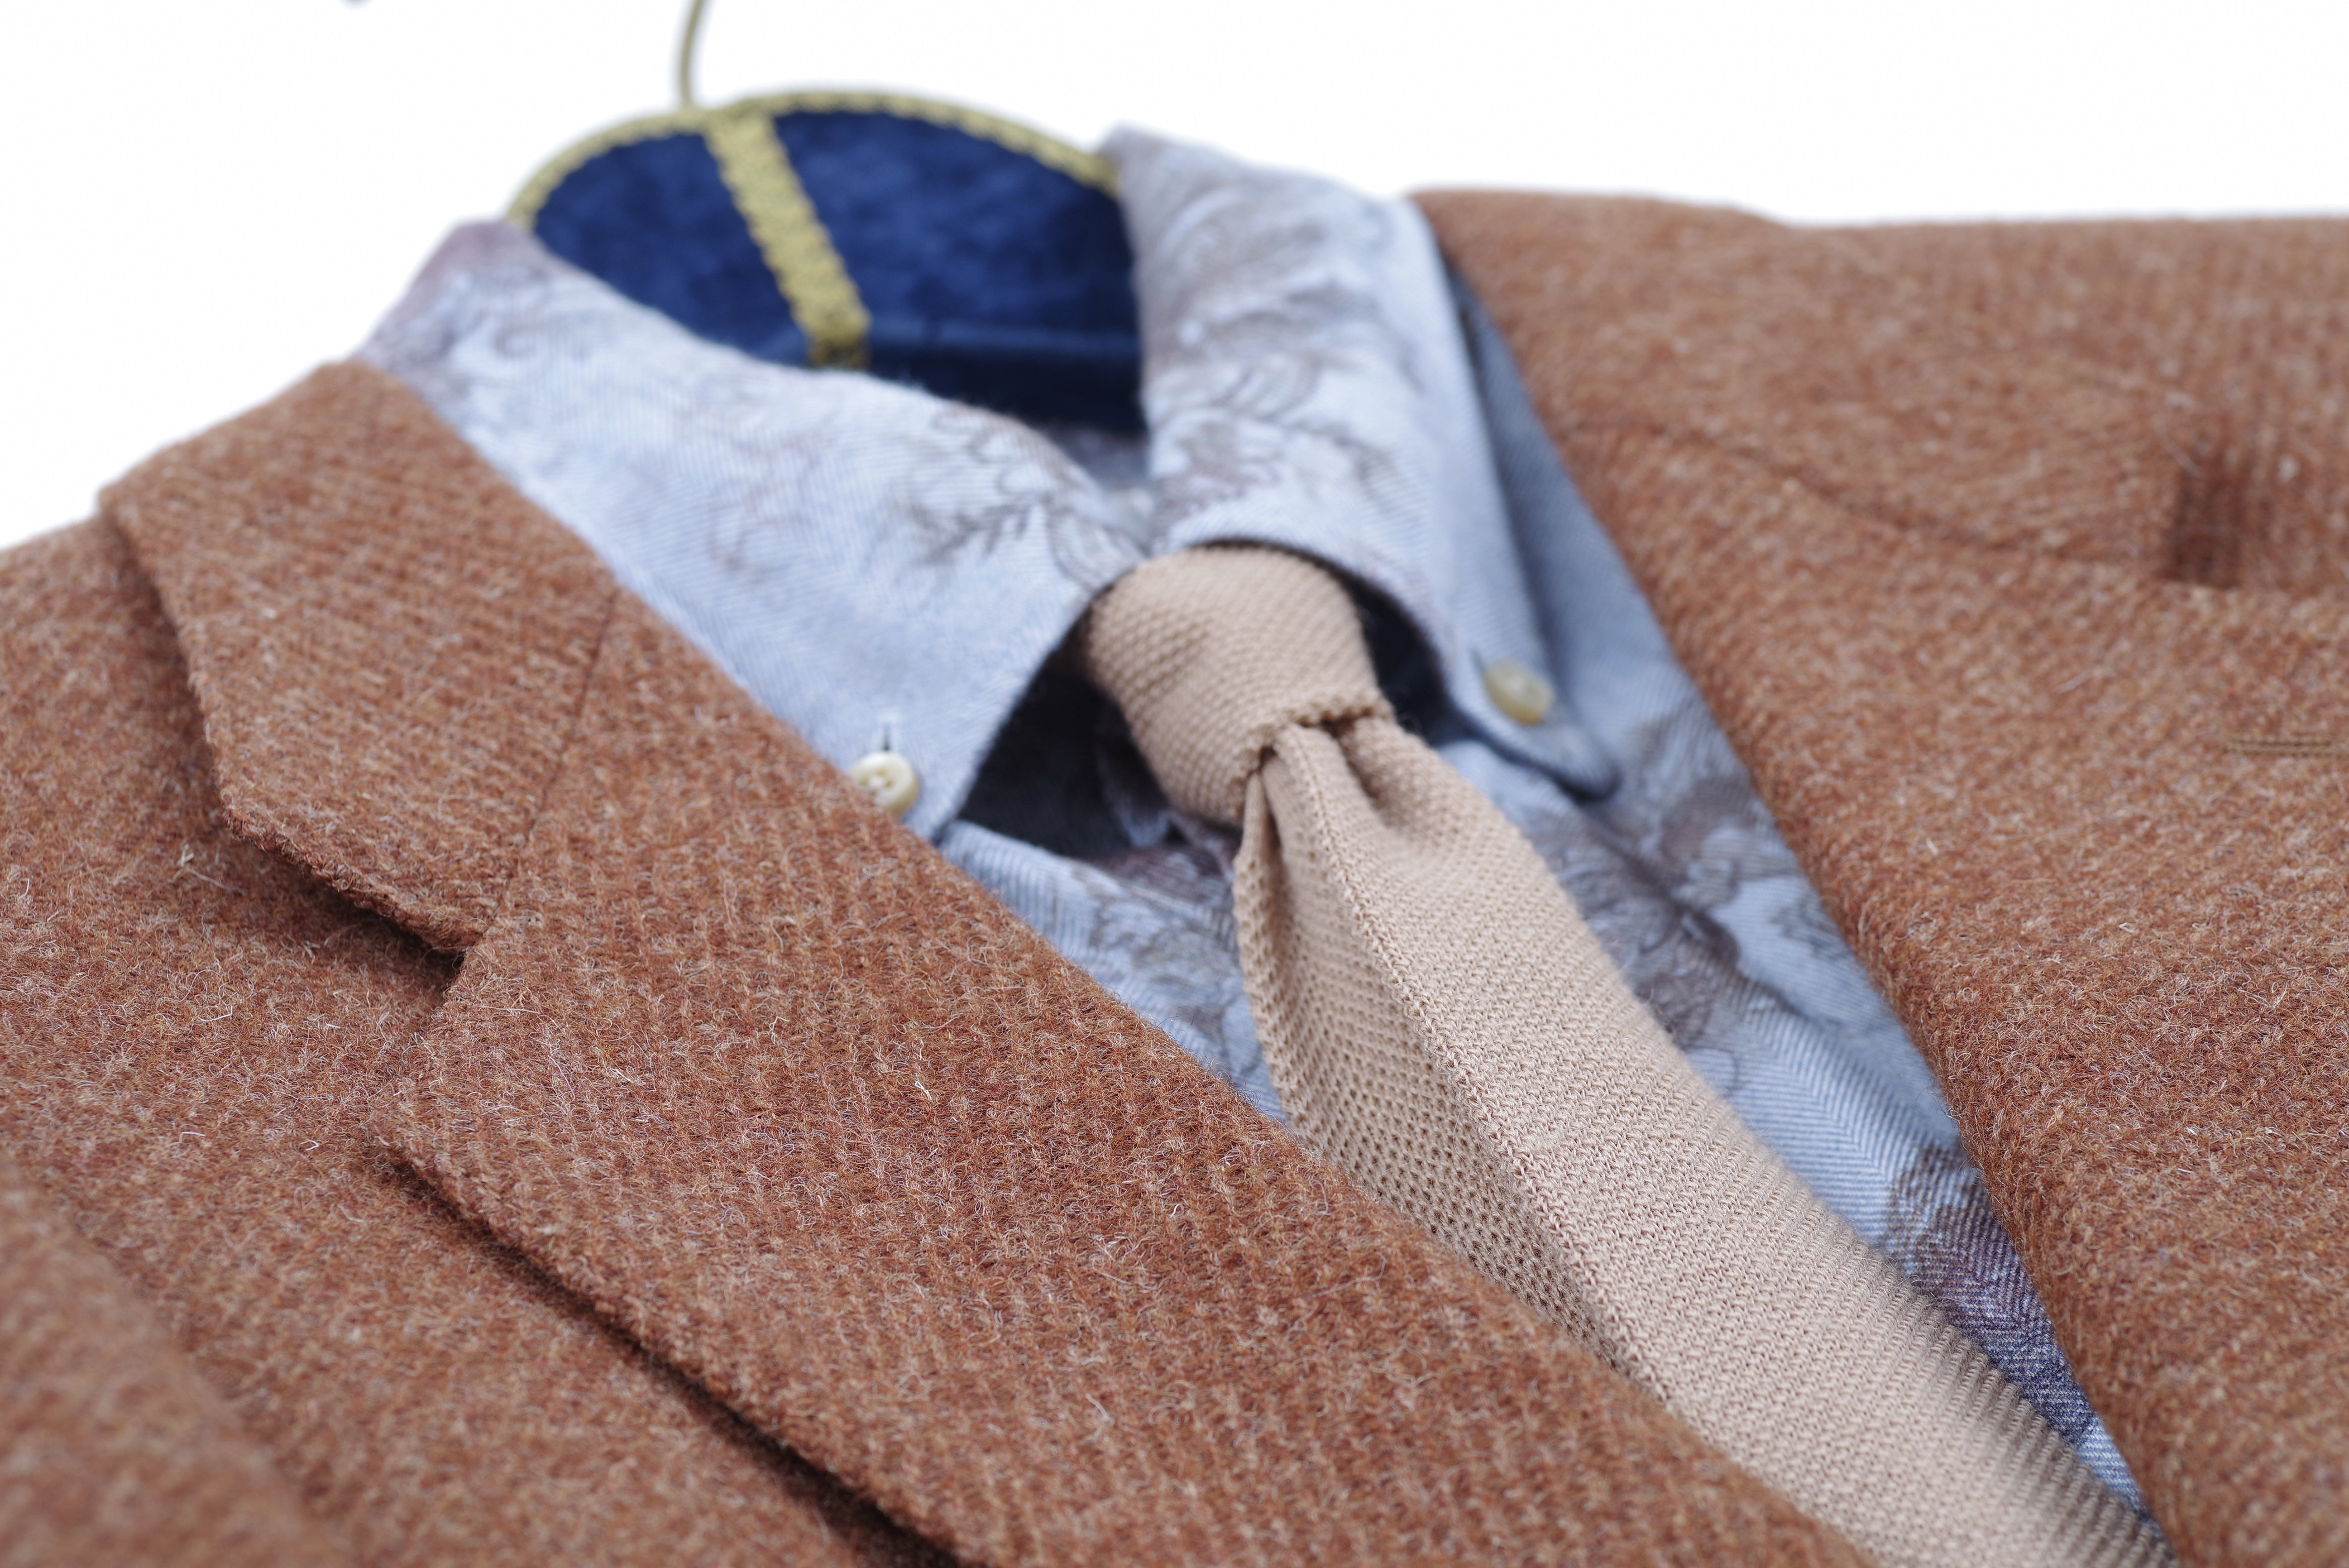 Harris Tweed Caramel Brown Wool Sport Coat Blazer, US 38R, EU 48R